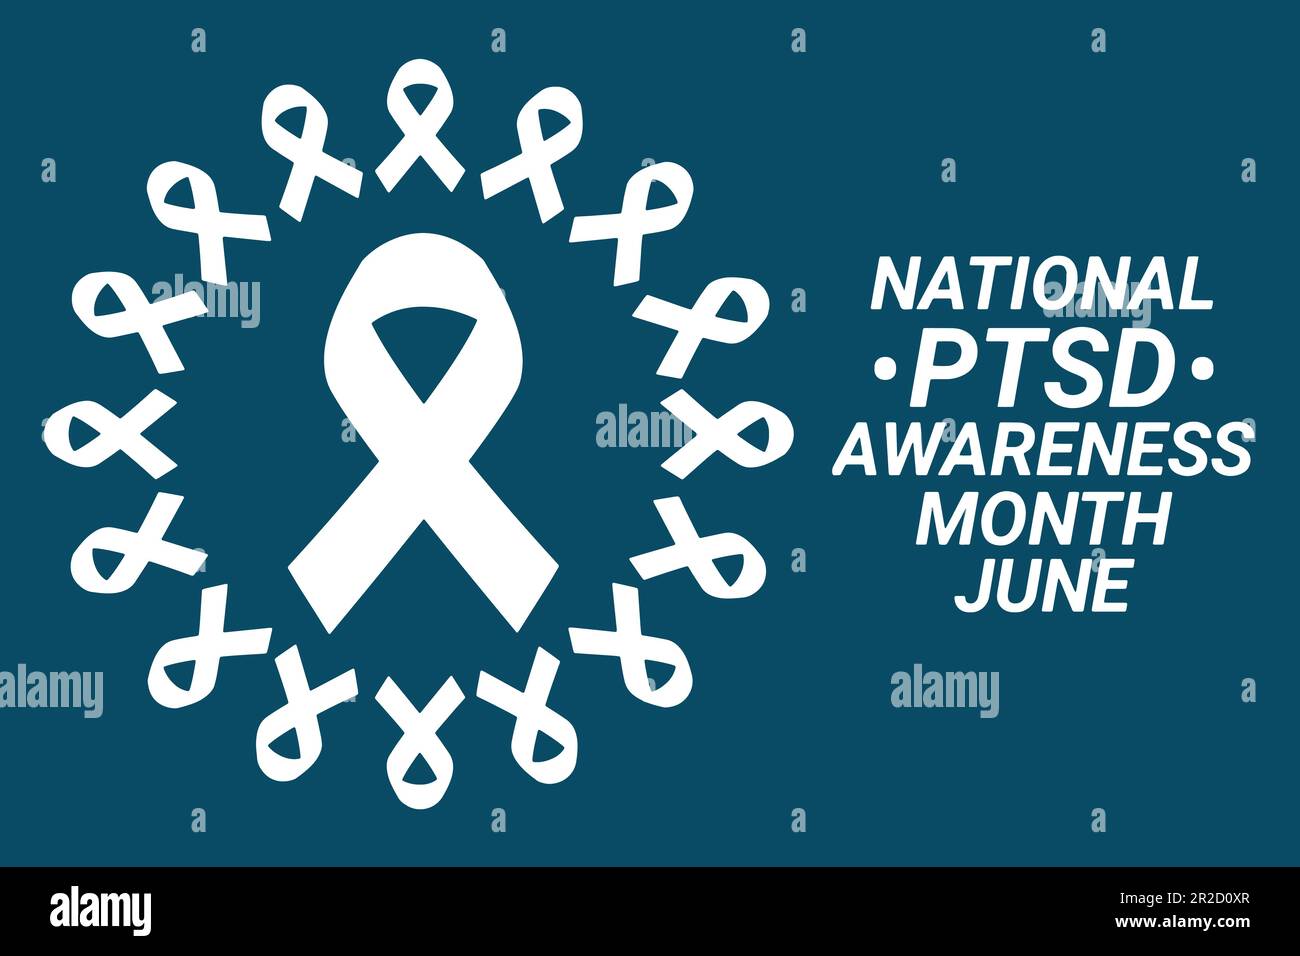 Vektordarstellung des National PTSD Awareness Month. Juni. Urlaubskonzept. Vorlage für Hintergrund, Banner, Karte, Poster mit Texteindruck. Stock Vektor